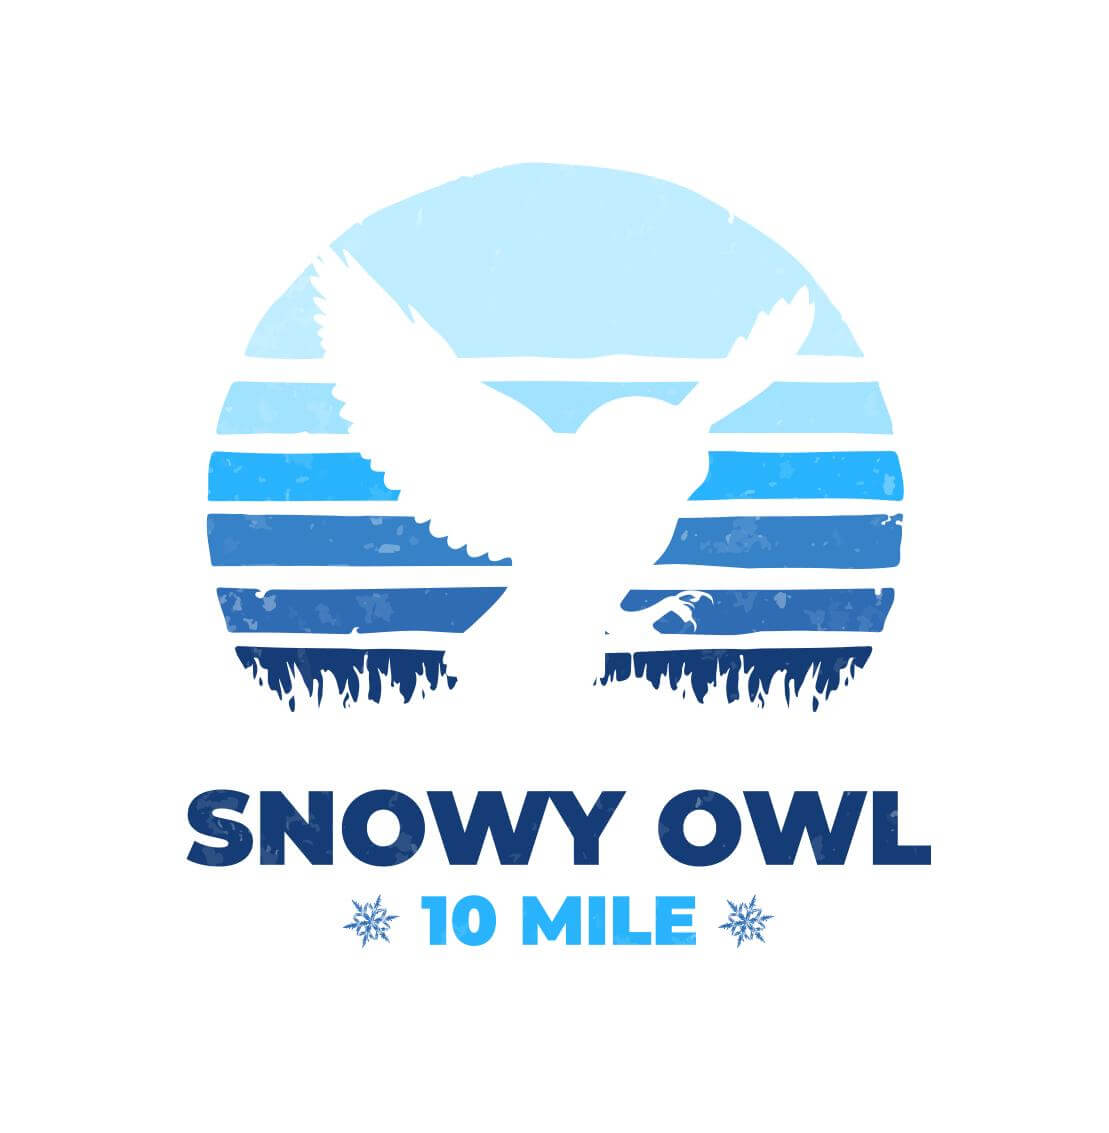 snowy-owl-10-mile-logo_Iyuzn1w